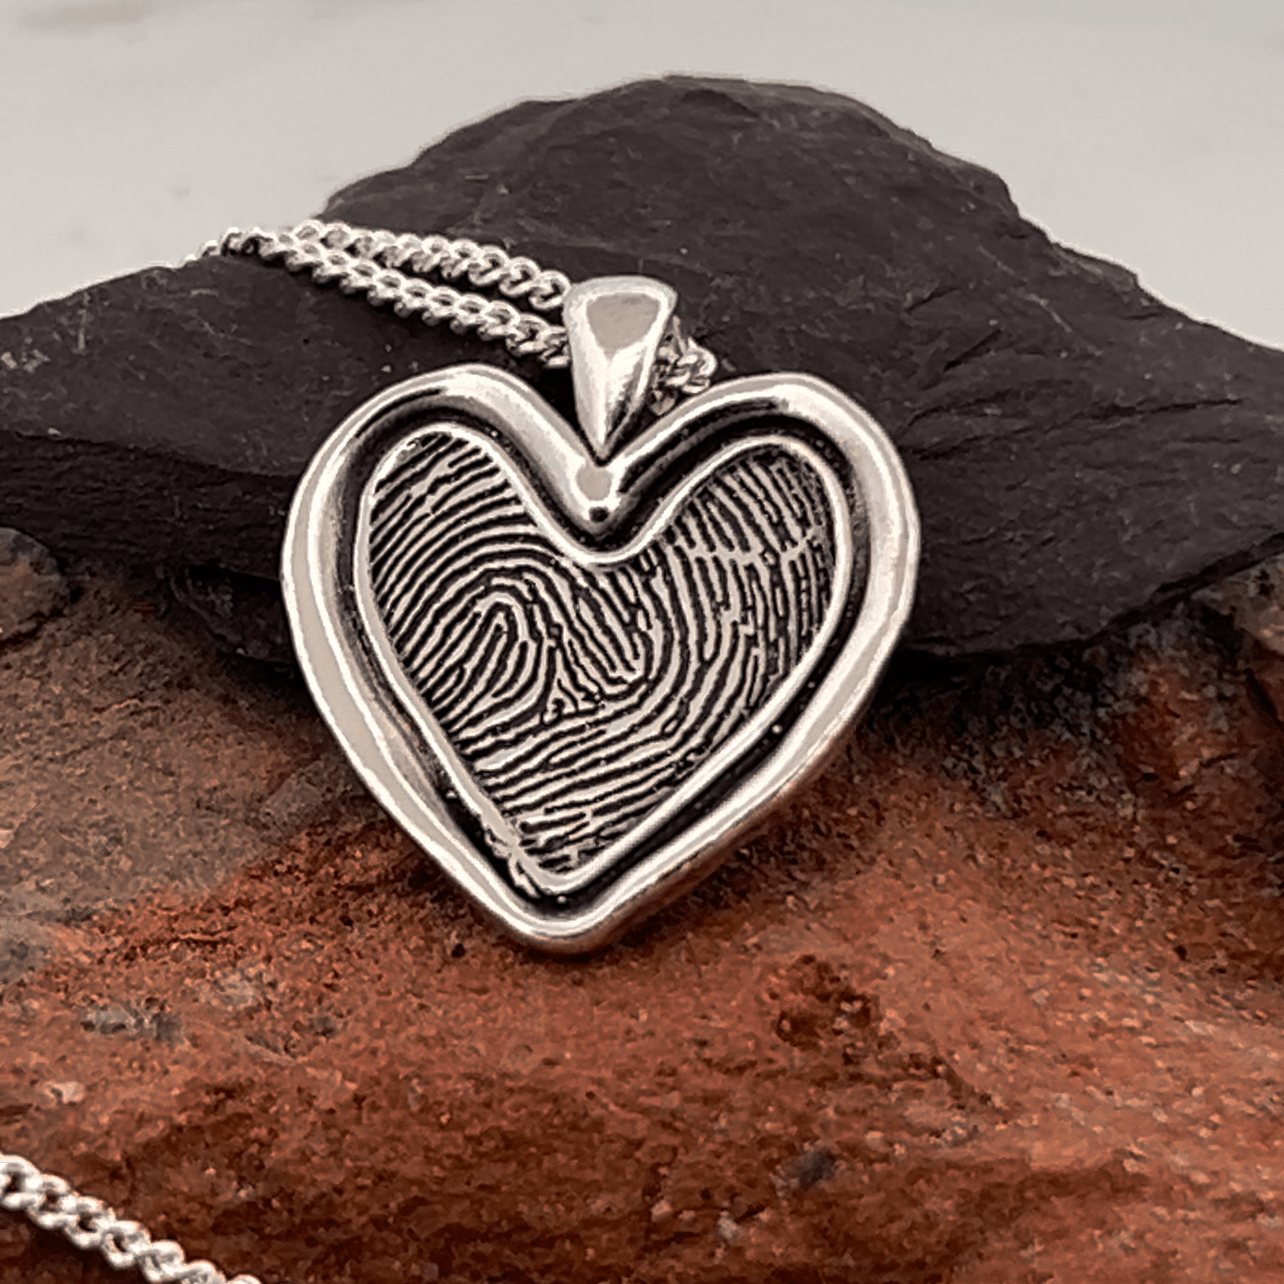 Fingerprint Necklace | Rustic Heart Pendant Pendant by Chris Parry Jewellery